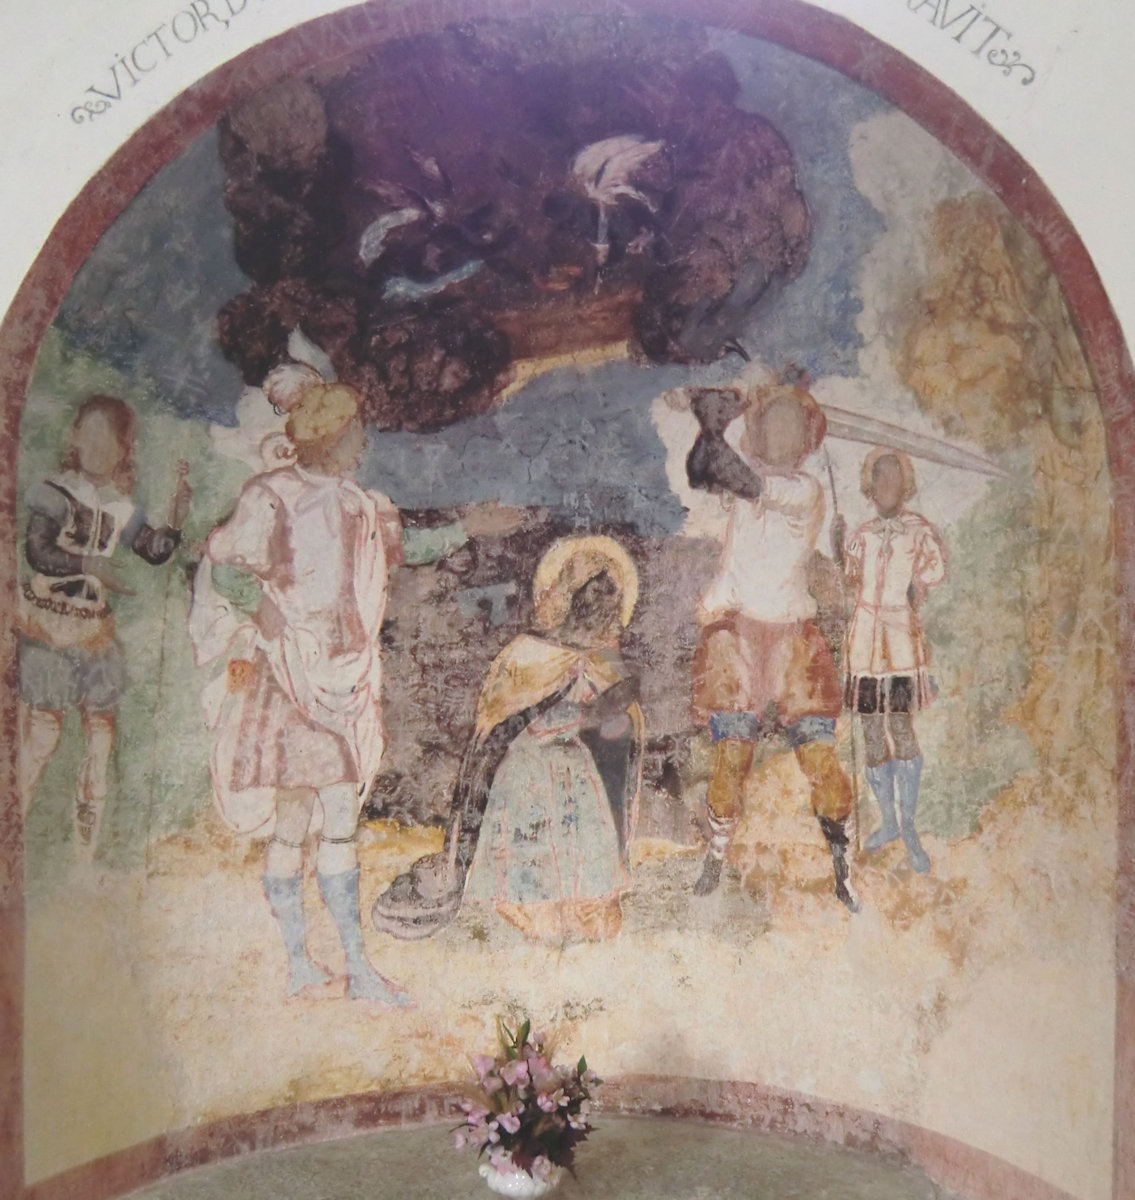 Victors Rettung durch einen Engel, nachdem er von einer Brücke stürzte, Fresko in der Placiduskirche in Disentis